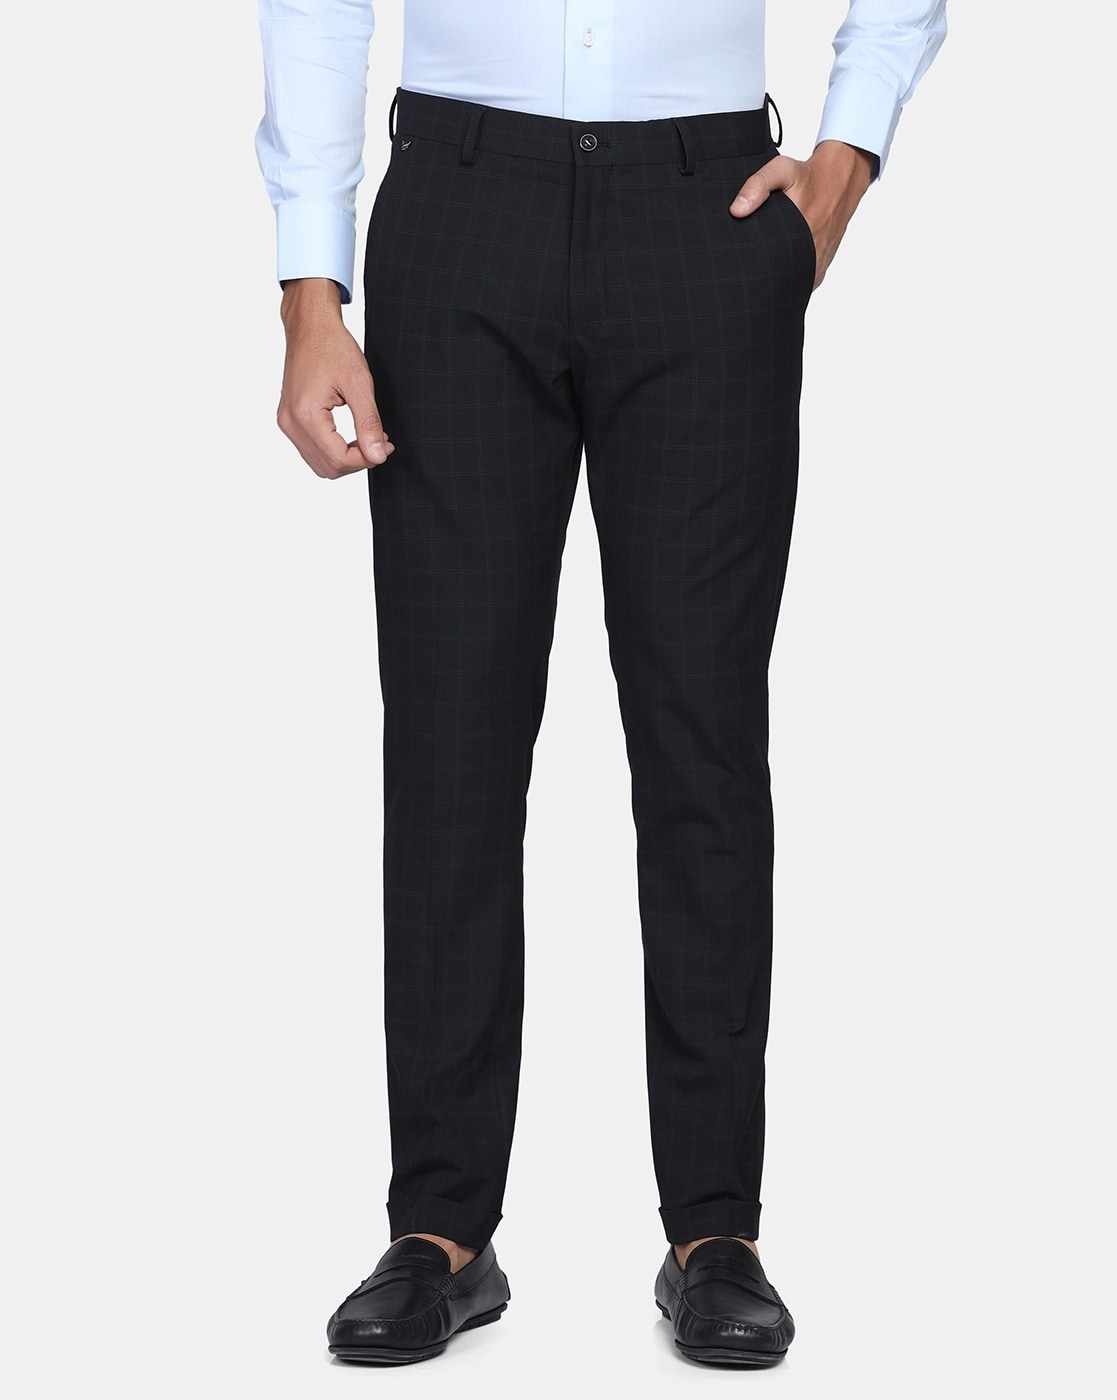 Buy Grey Trousers  Pants for Men by BLACKBERRYS Online  Ajiocom